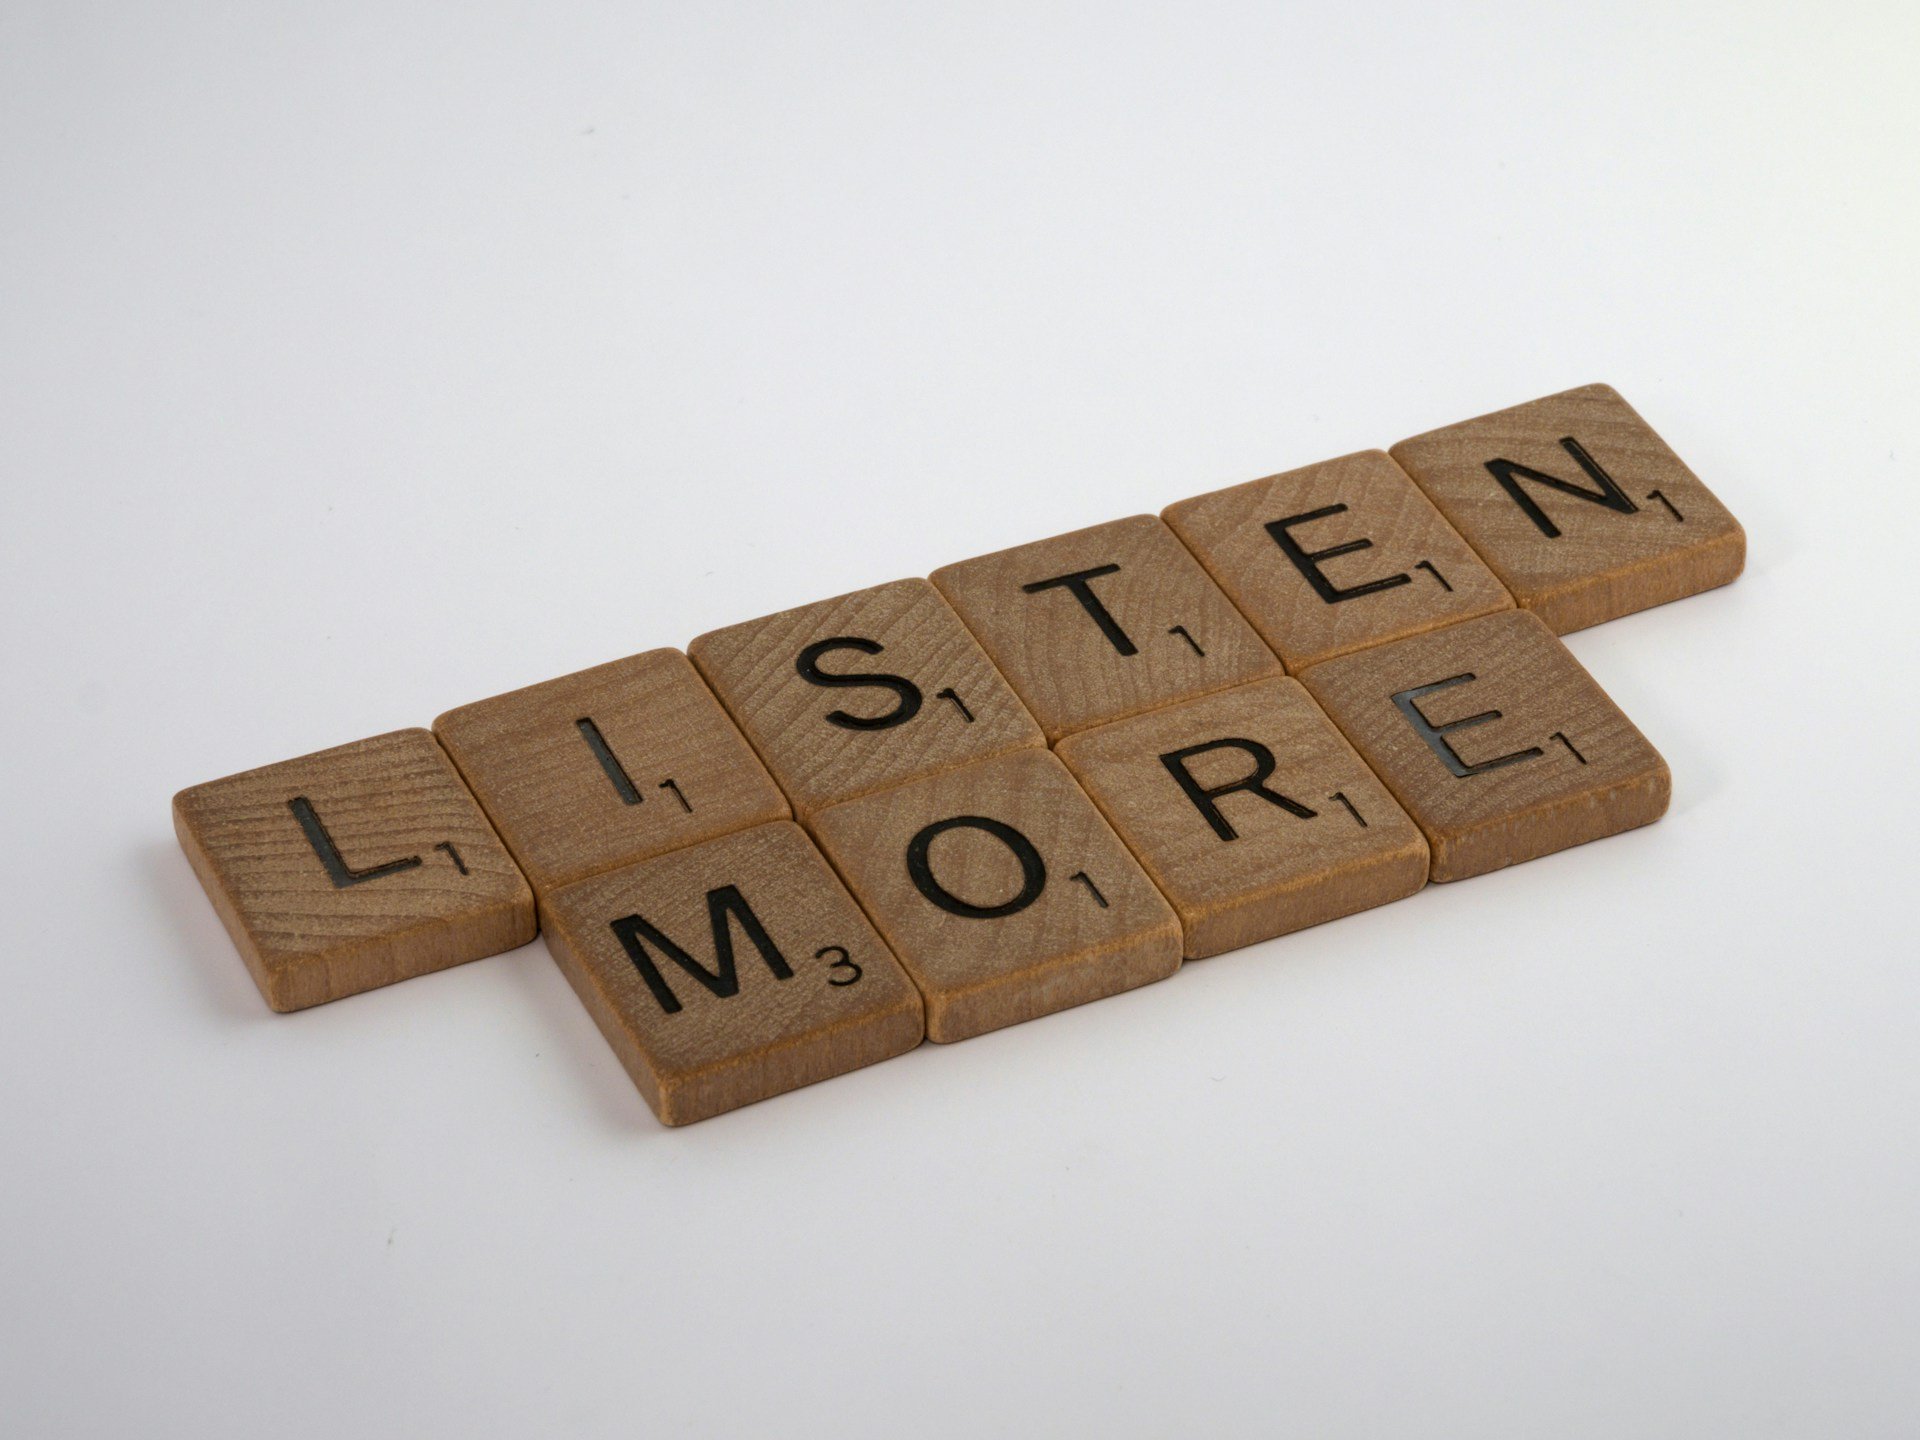 La importancia vital de escuchar a nuestro cuerpo